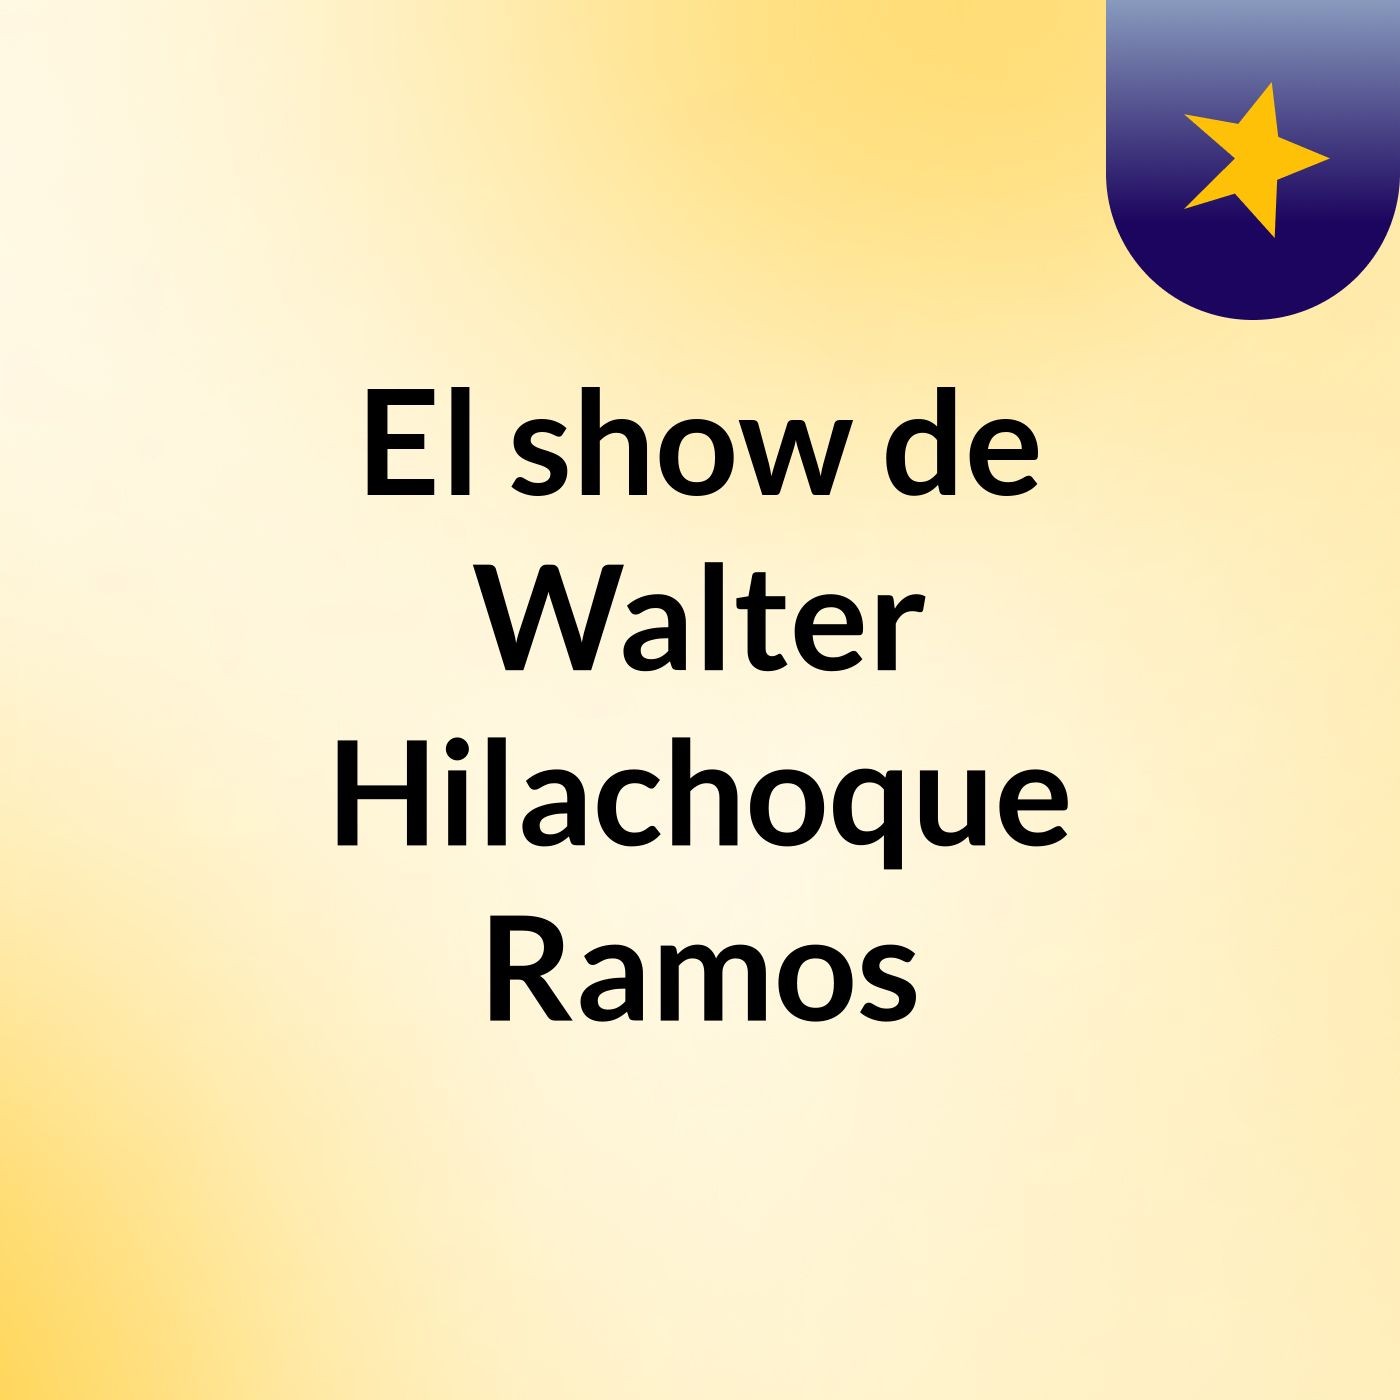 El show de Walter Hilachoque Ramos